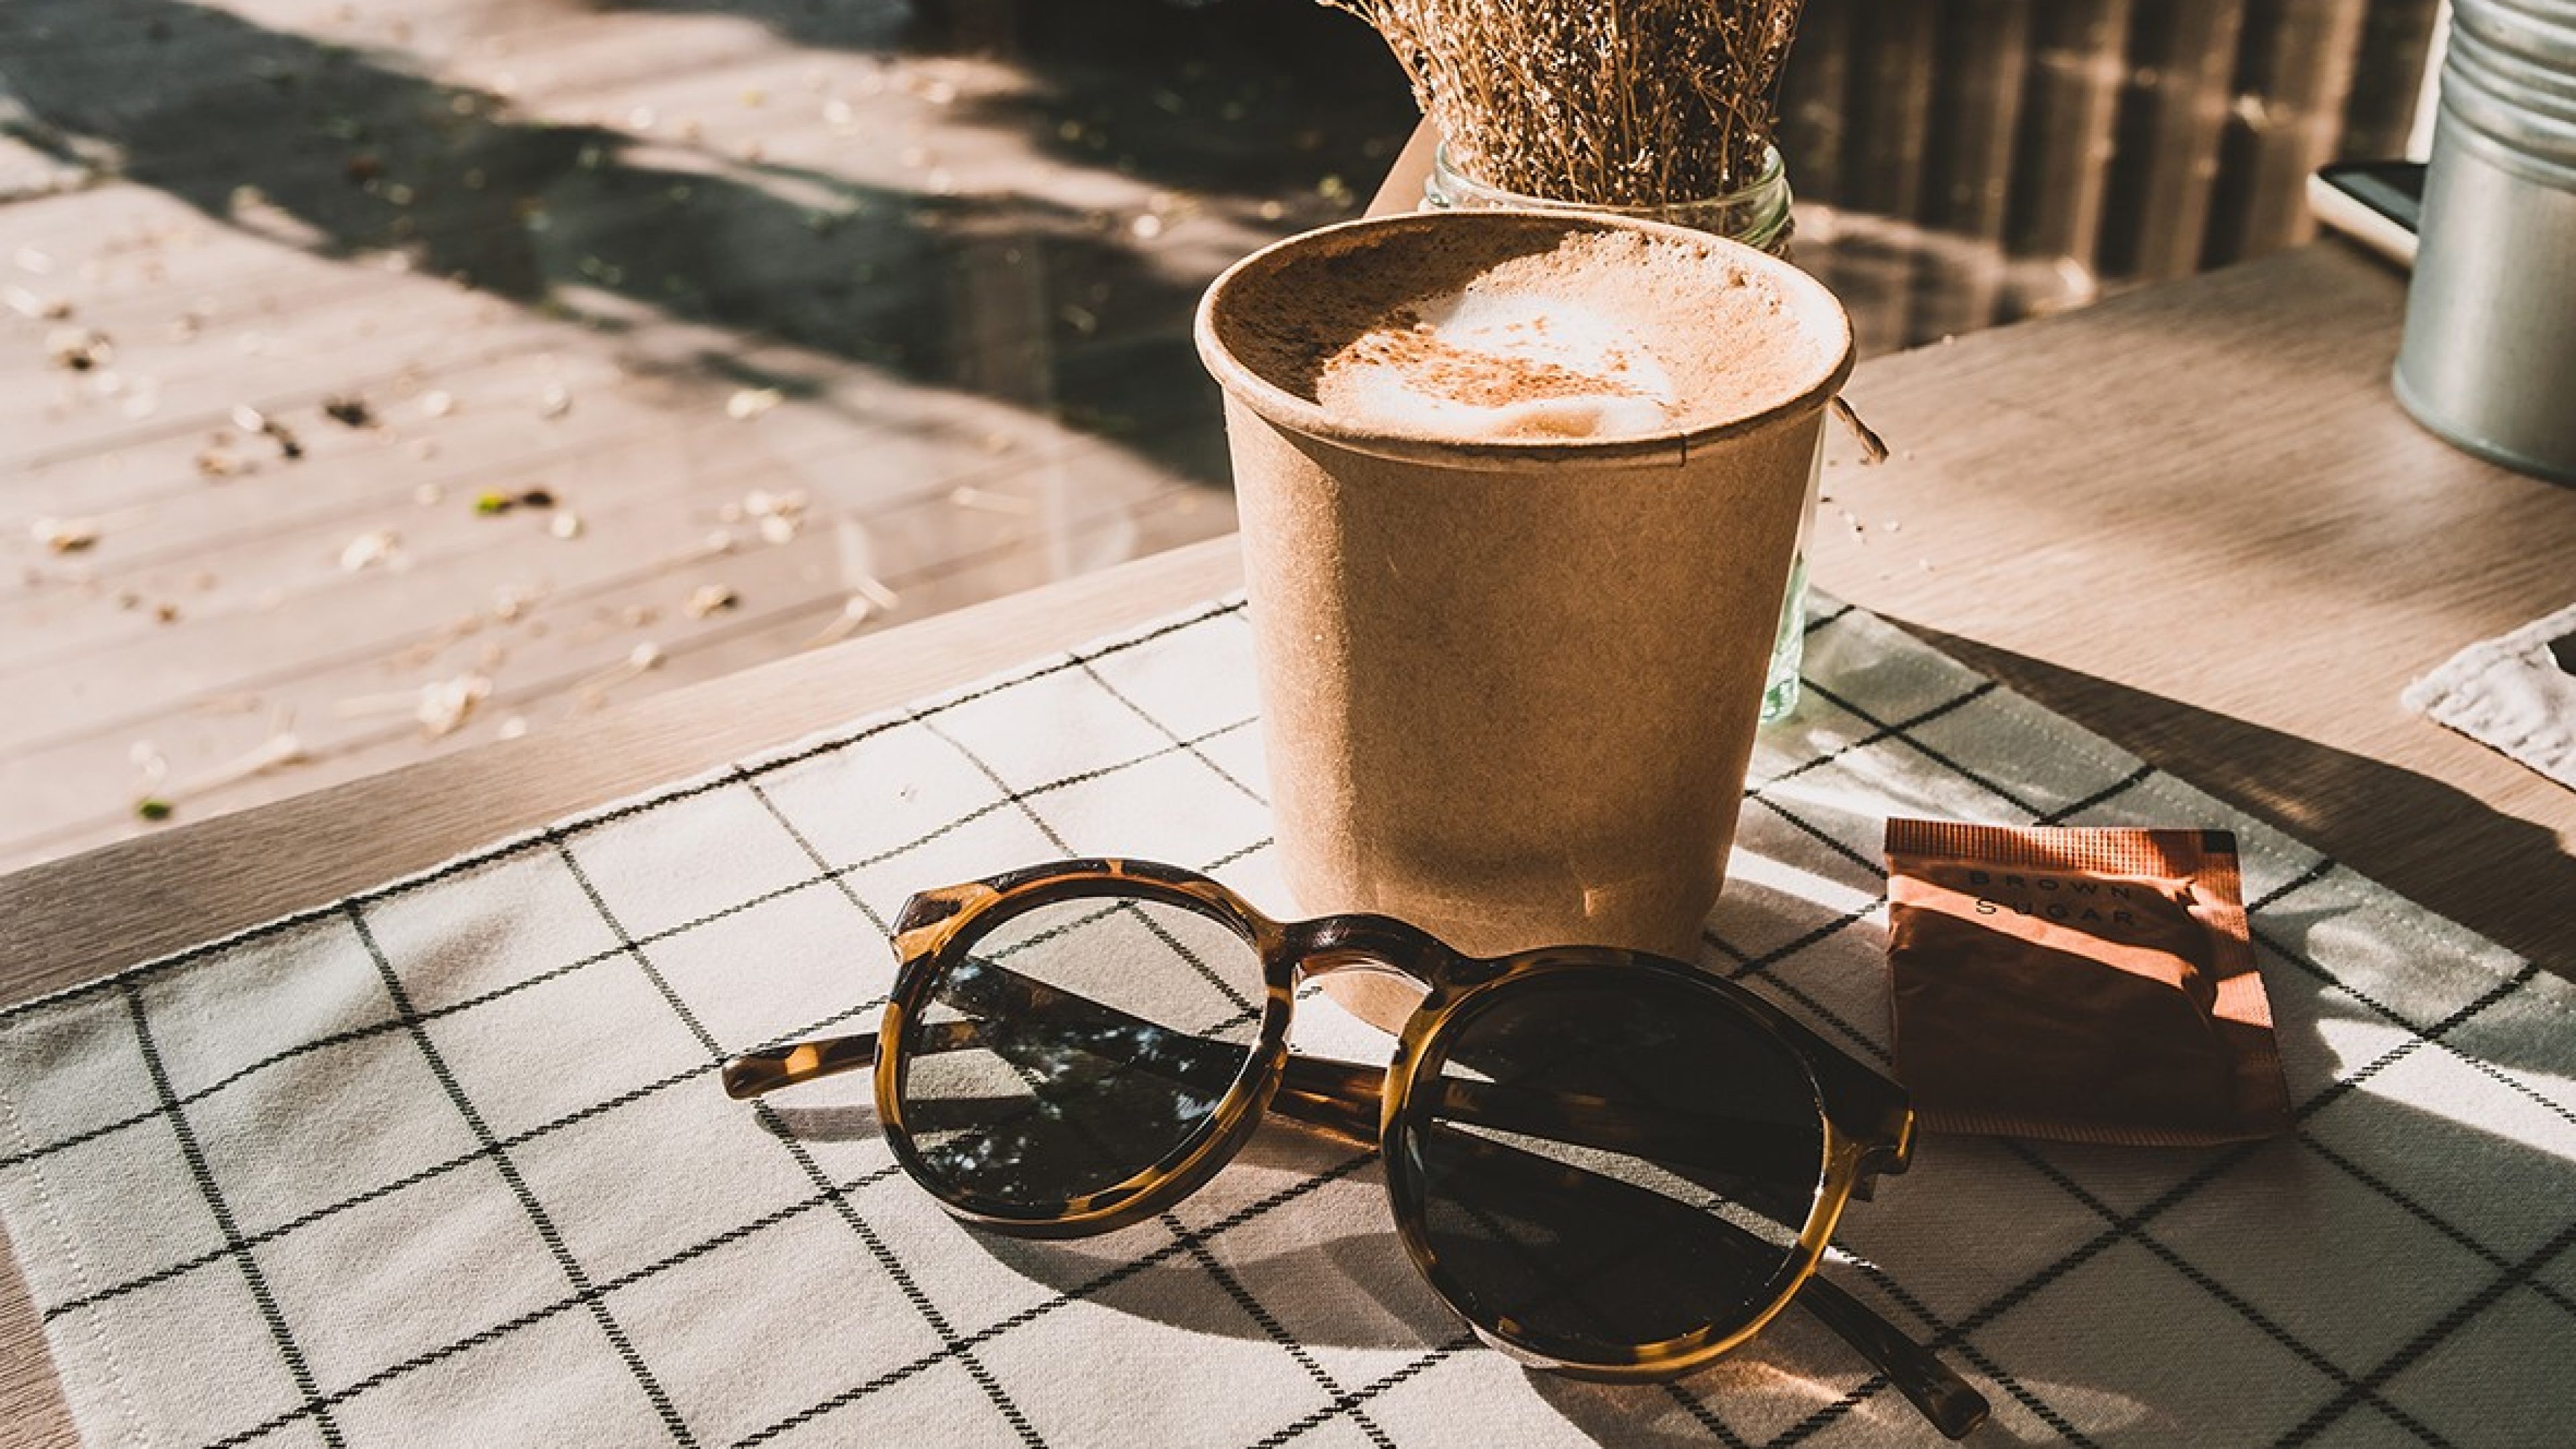 Sonnenbrille liegt neben einem Cappuccino auf dem Tisch. 